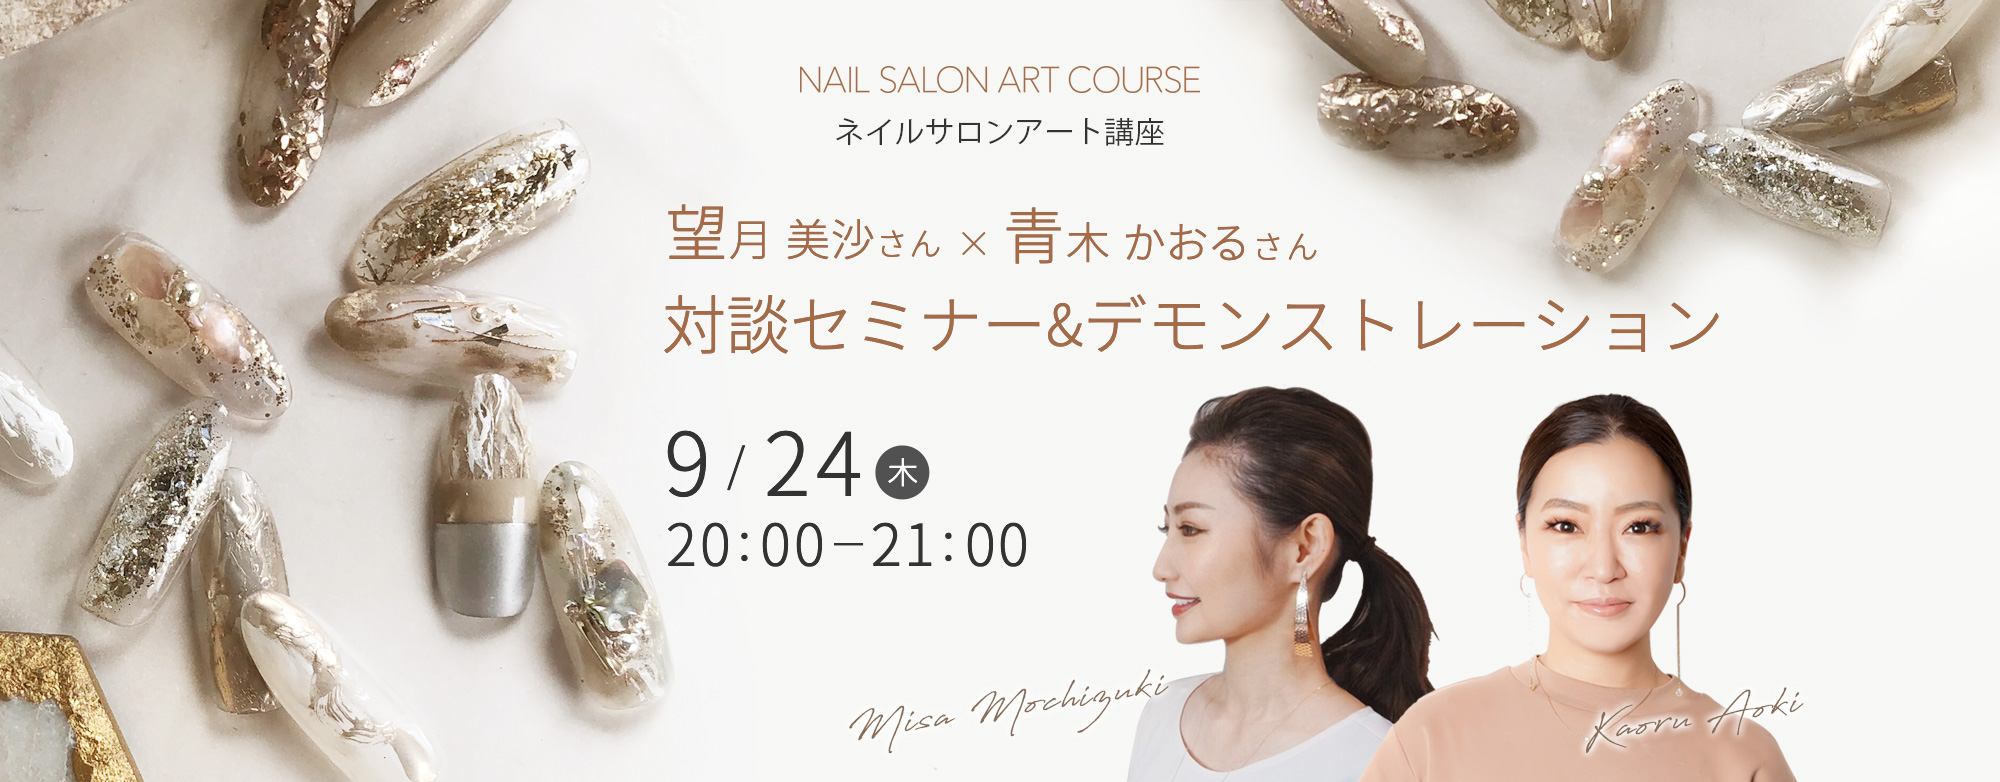 9/24開催 ネイルサロンアート講座 望月美沙さん×青木かおるさん対談セミナー&デモンストレーション